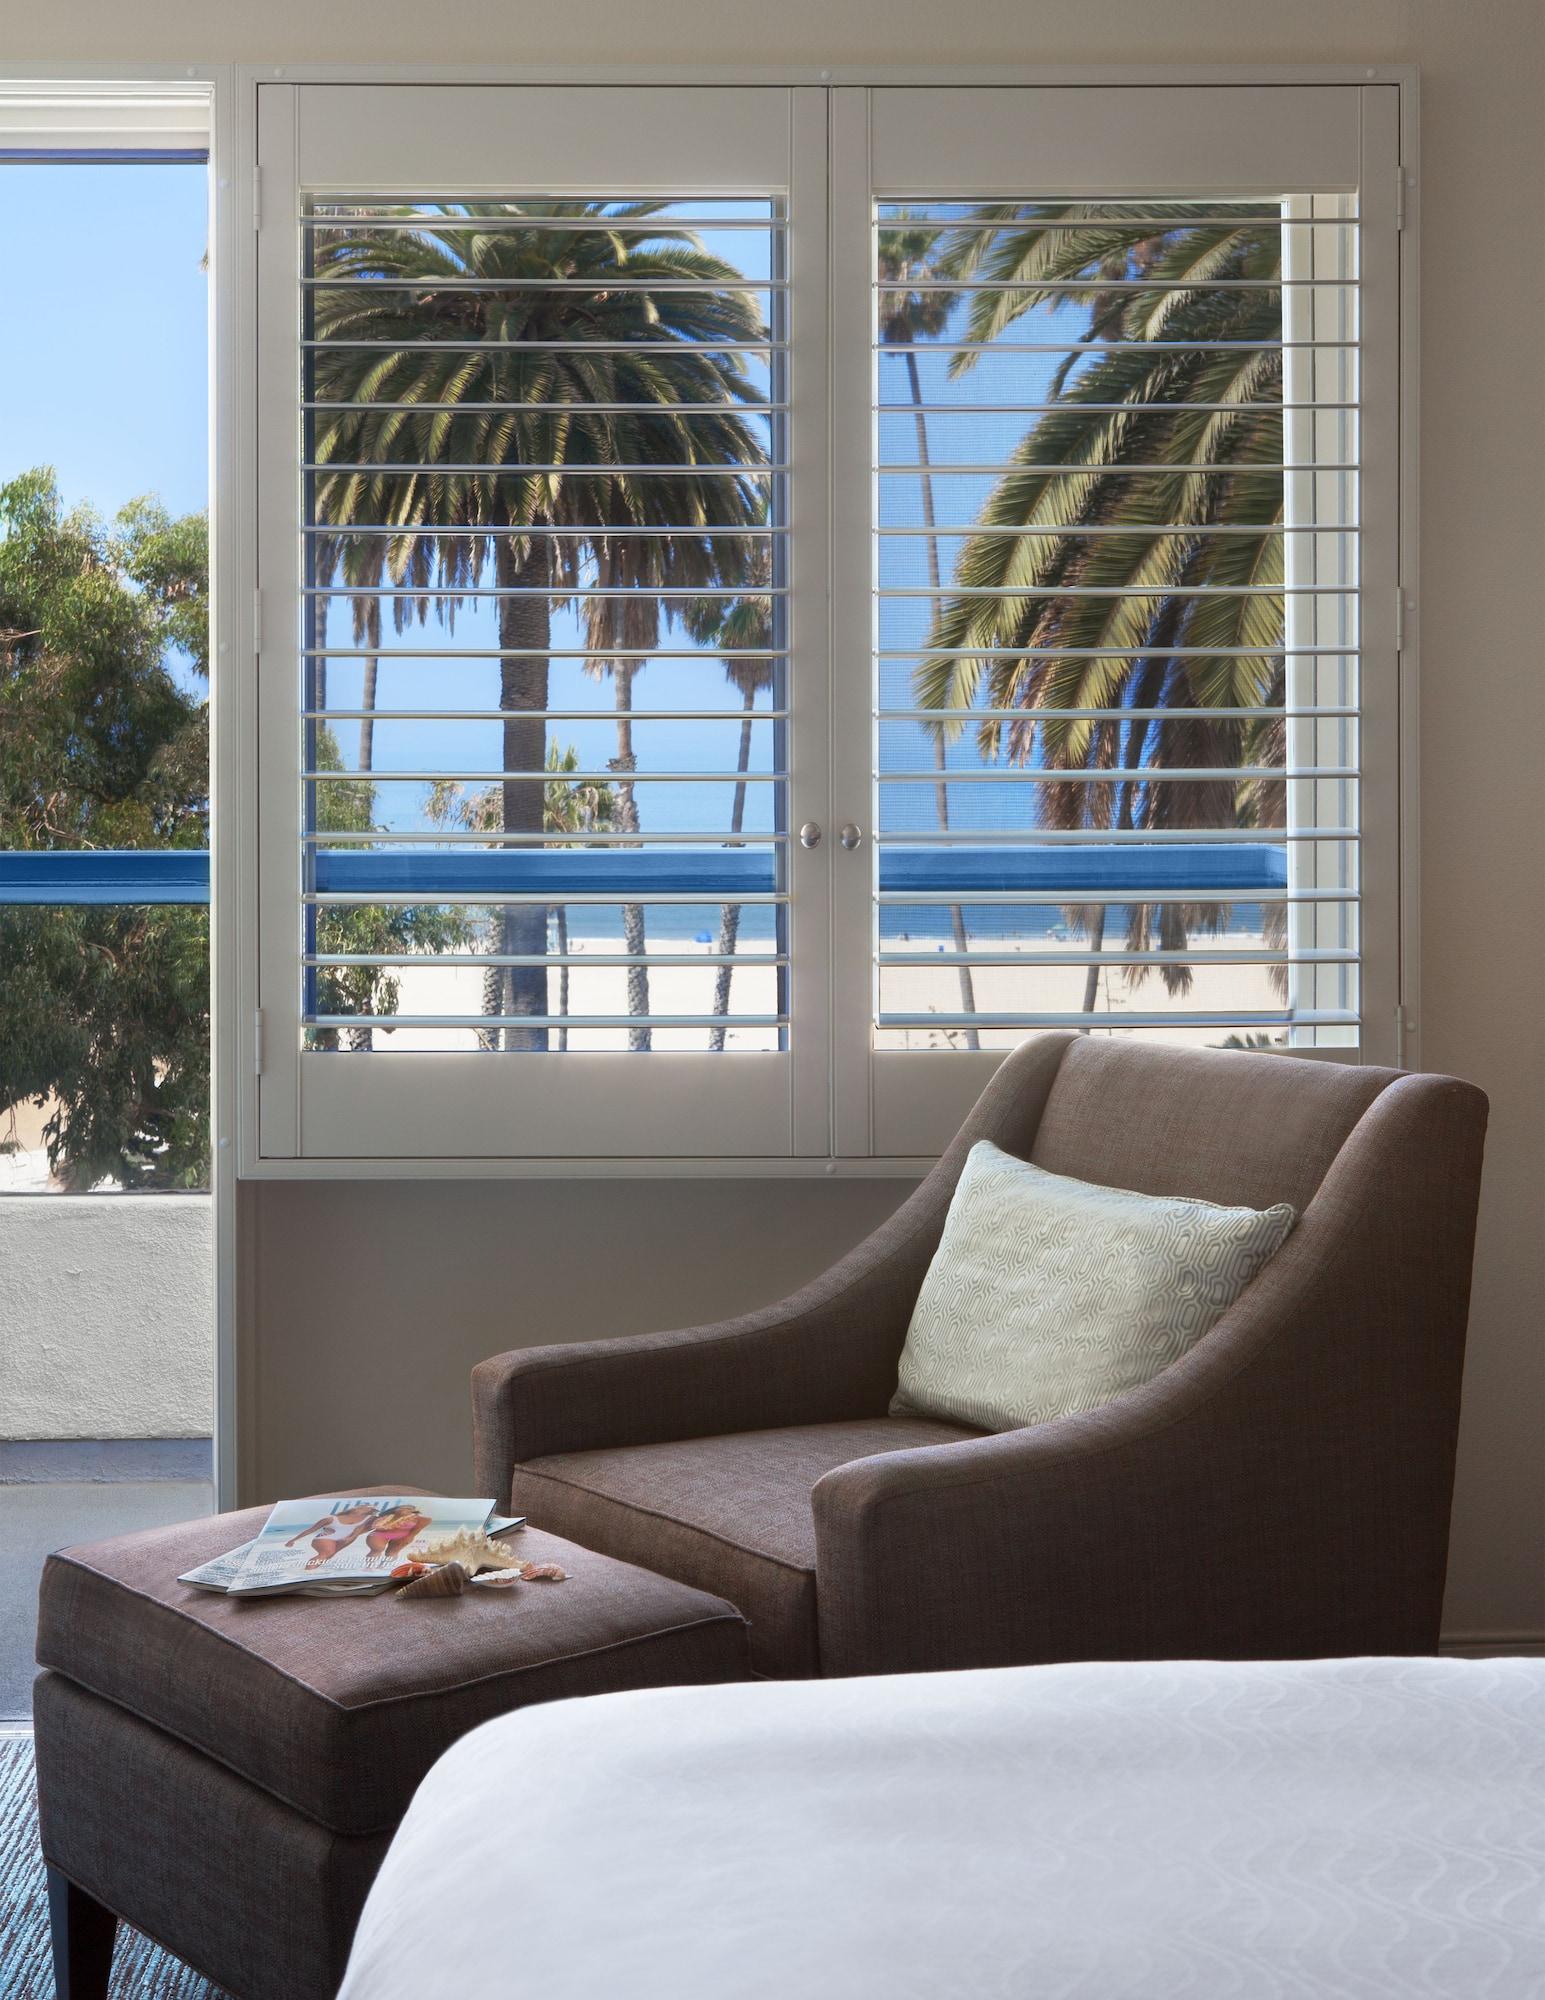 Ocean View Hotel Los Angeles Exterior foto